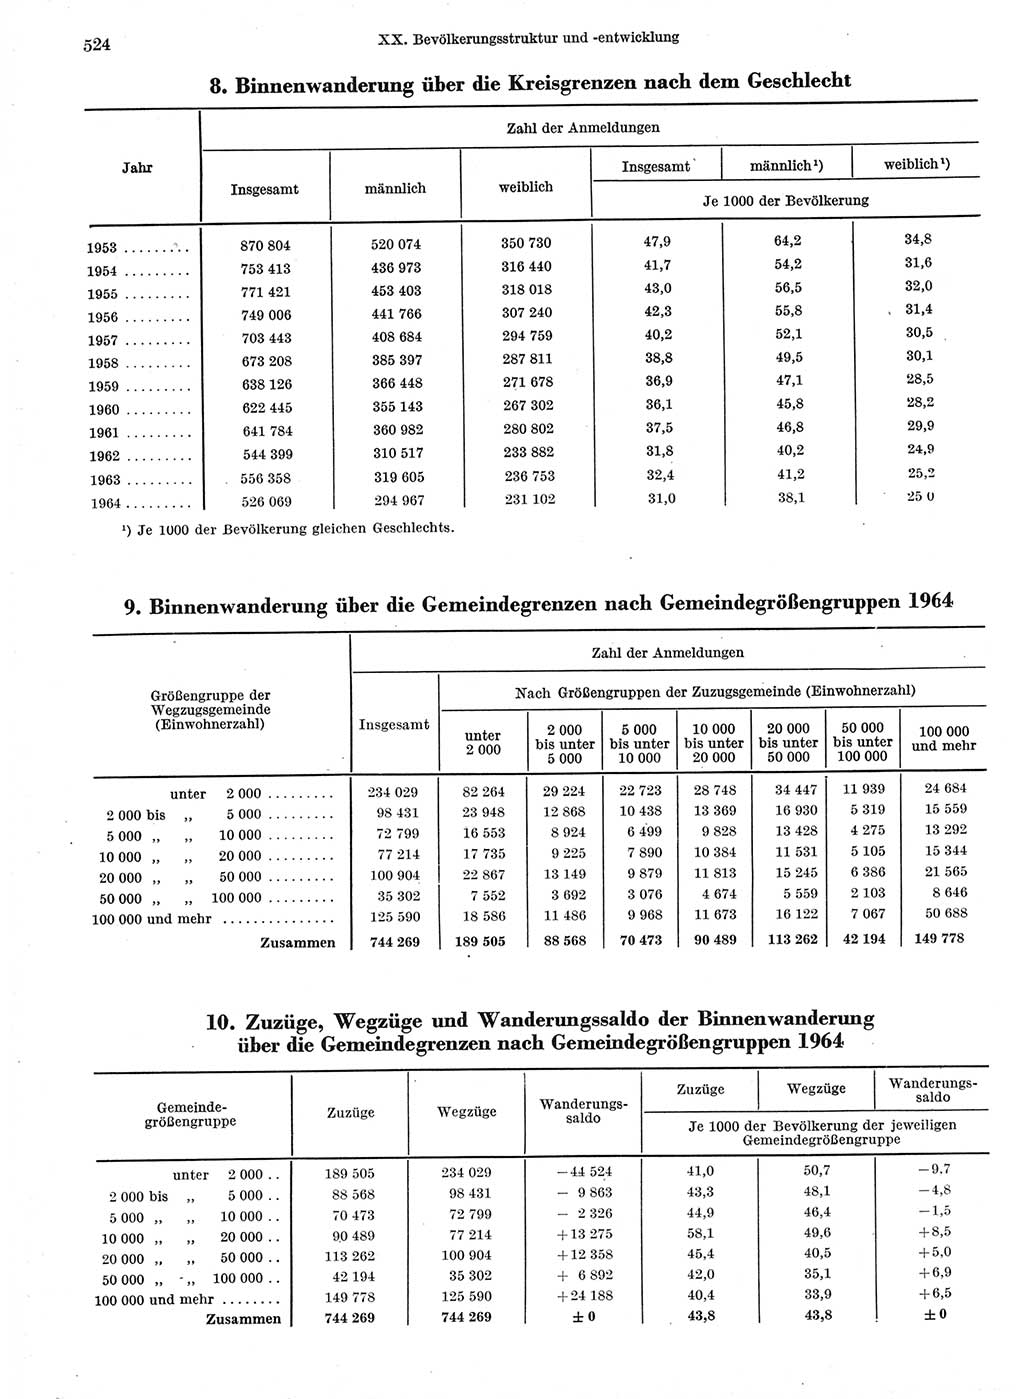 Statistisches Jahrbuch der Deutschen Demokratischen Republik (DDR) 1966, Seite 524 (Stat. Jb. DDR 1966, S. 524)